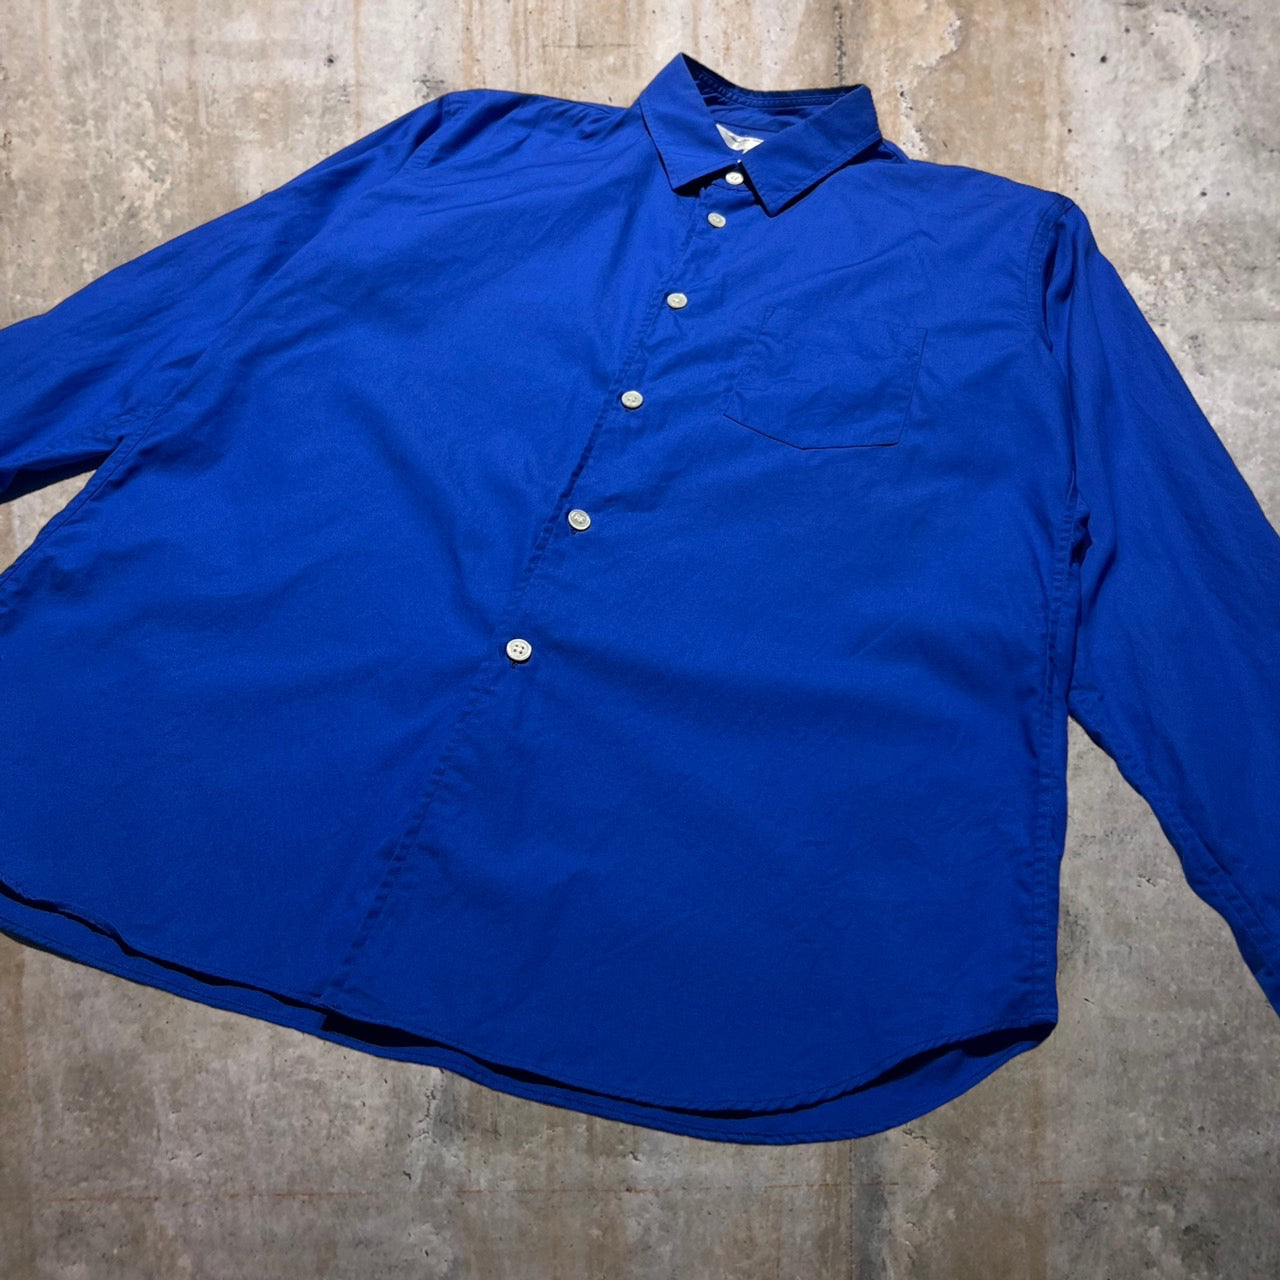 COMME des GARCONS SHIRT BOY(コムデギャルソンシャツボーイ) 19SSバックロゴシャツ M ブルー